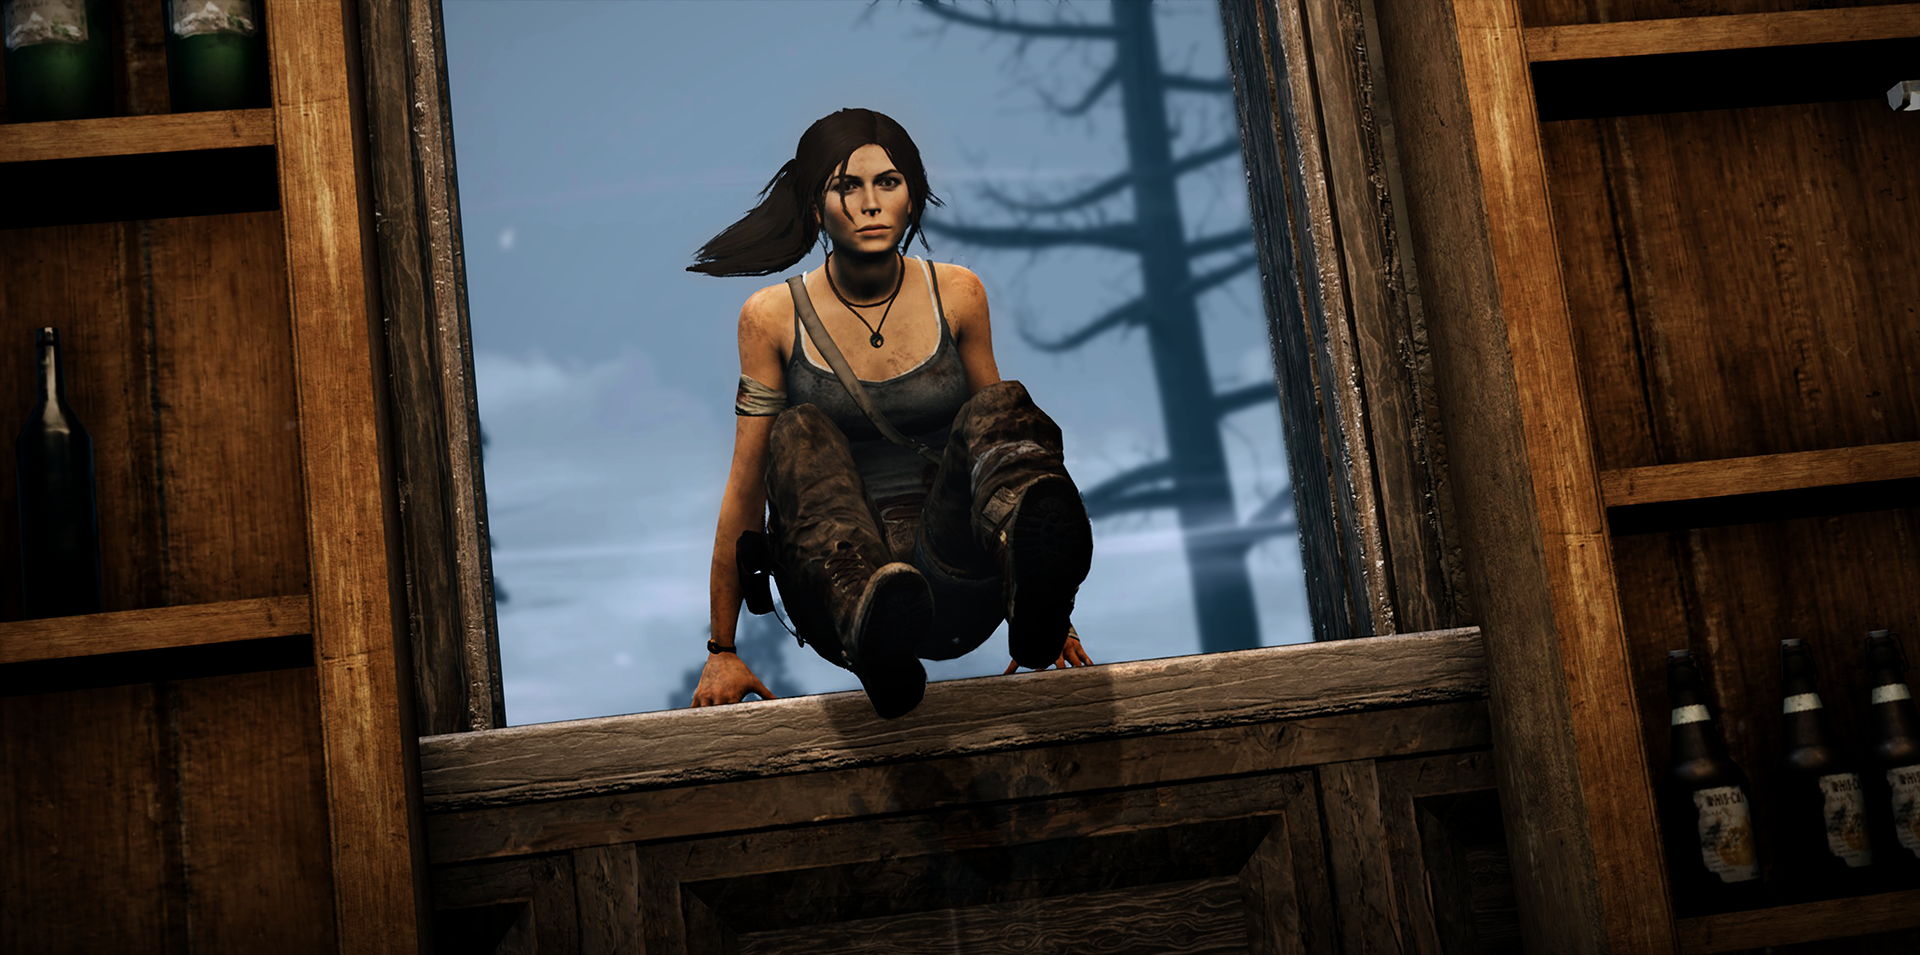 Lara Croft mendemonstrasikan kemampuan lompat cepatnya di Dead by Daylight dengan melompat melalui ambang jendela.